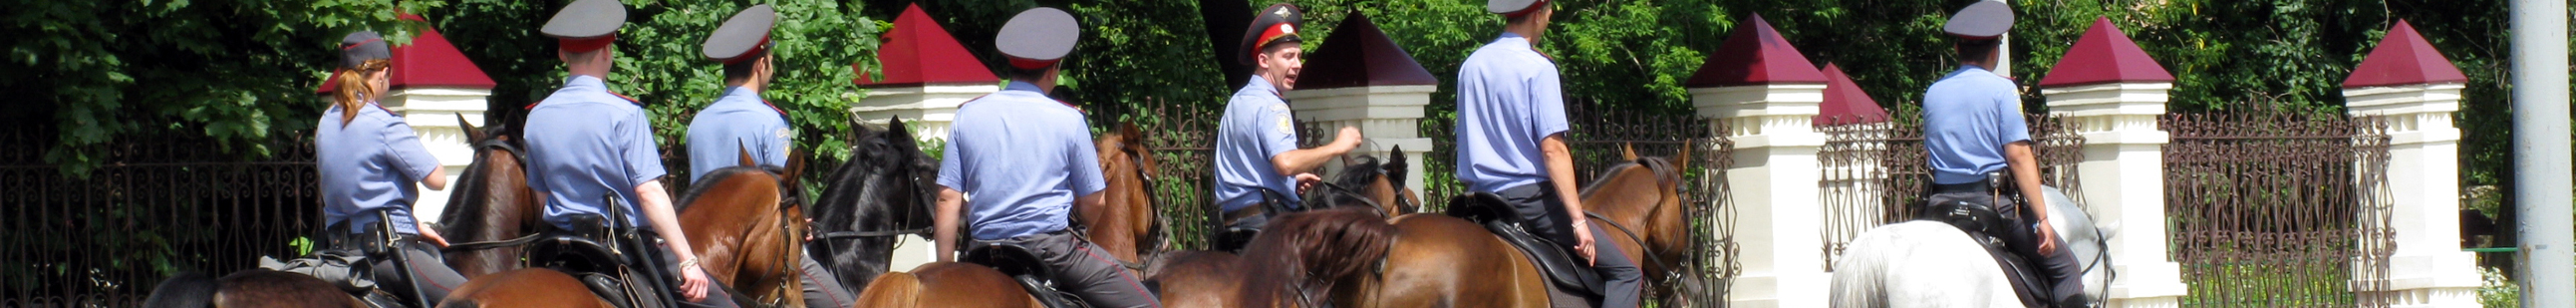 Девиз конной полиции: «Конь, отвага и закон — наш девиз и ваш покой»